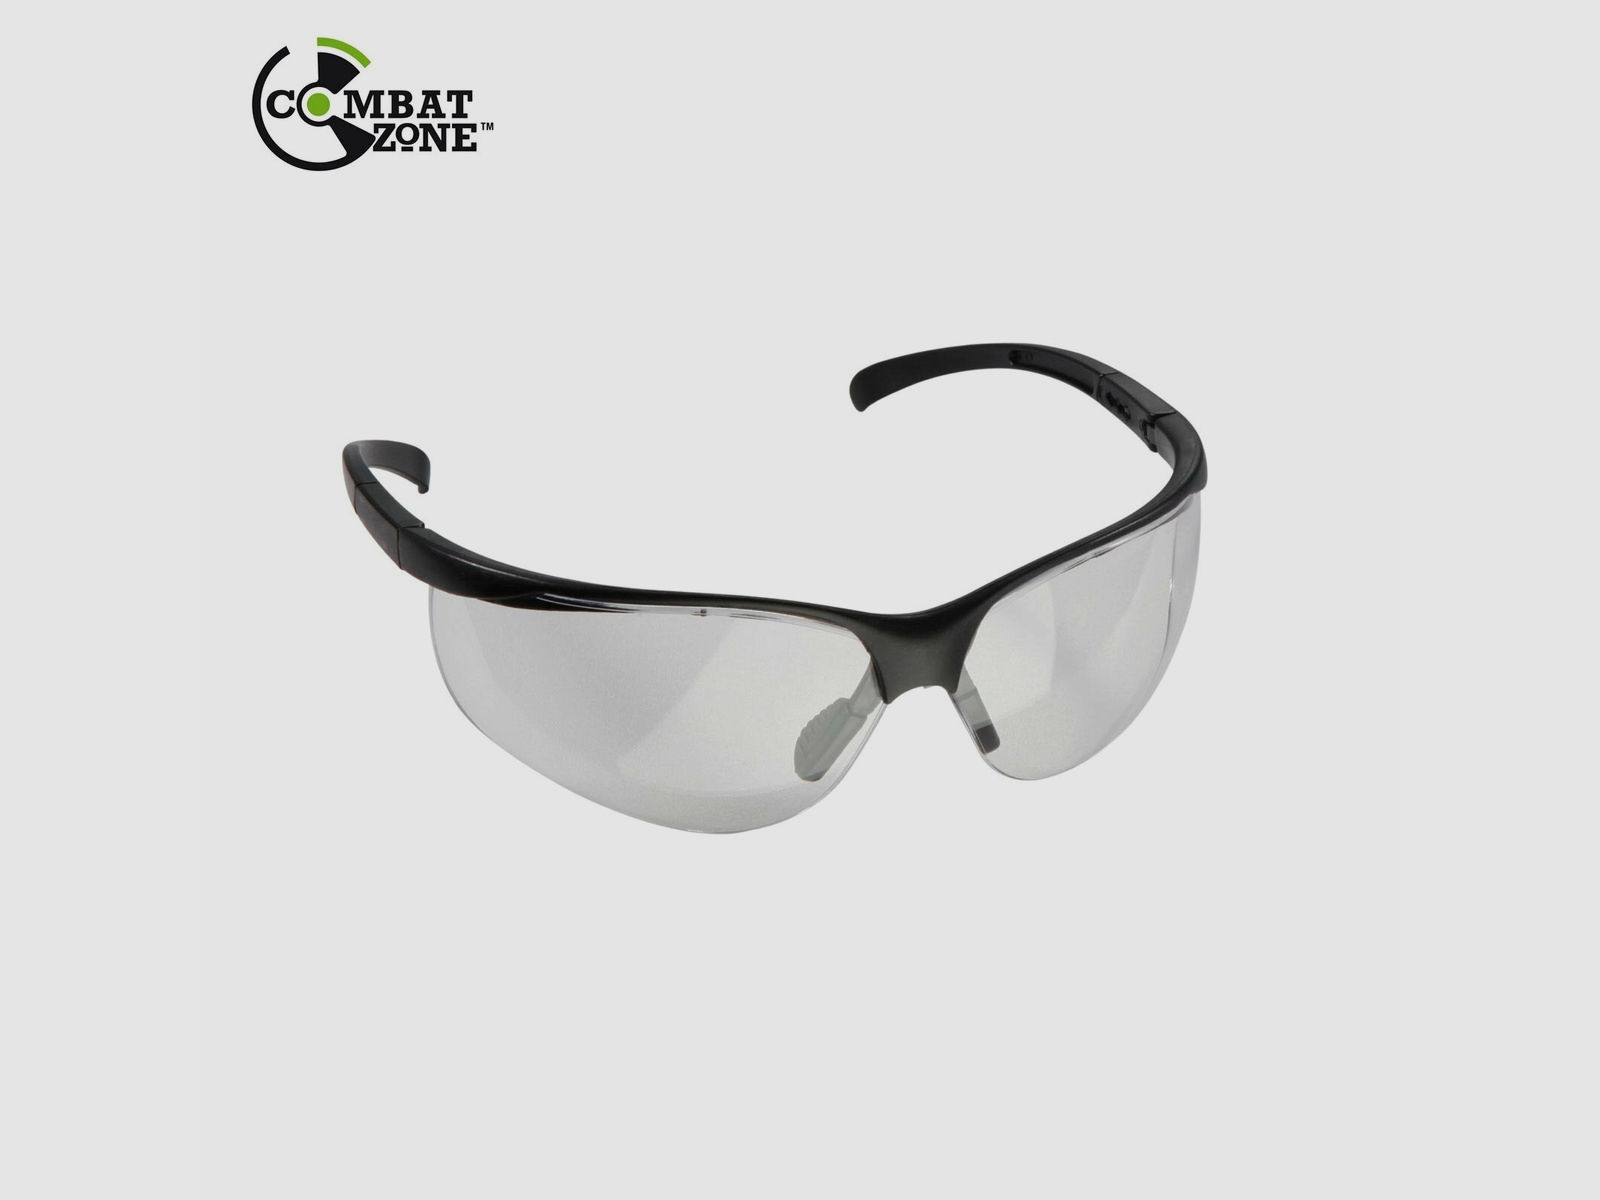 Schießbrille / Schutzbrille Combat Zone SG1